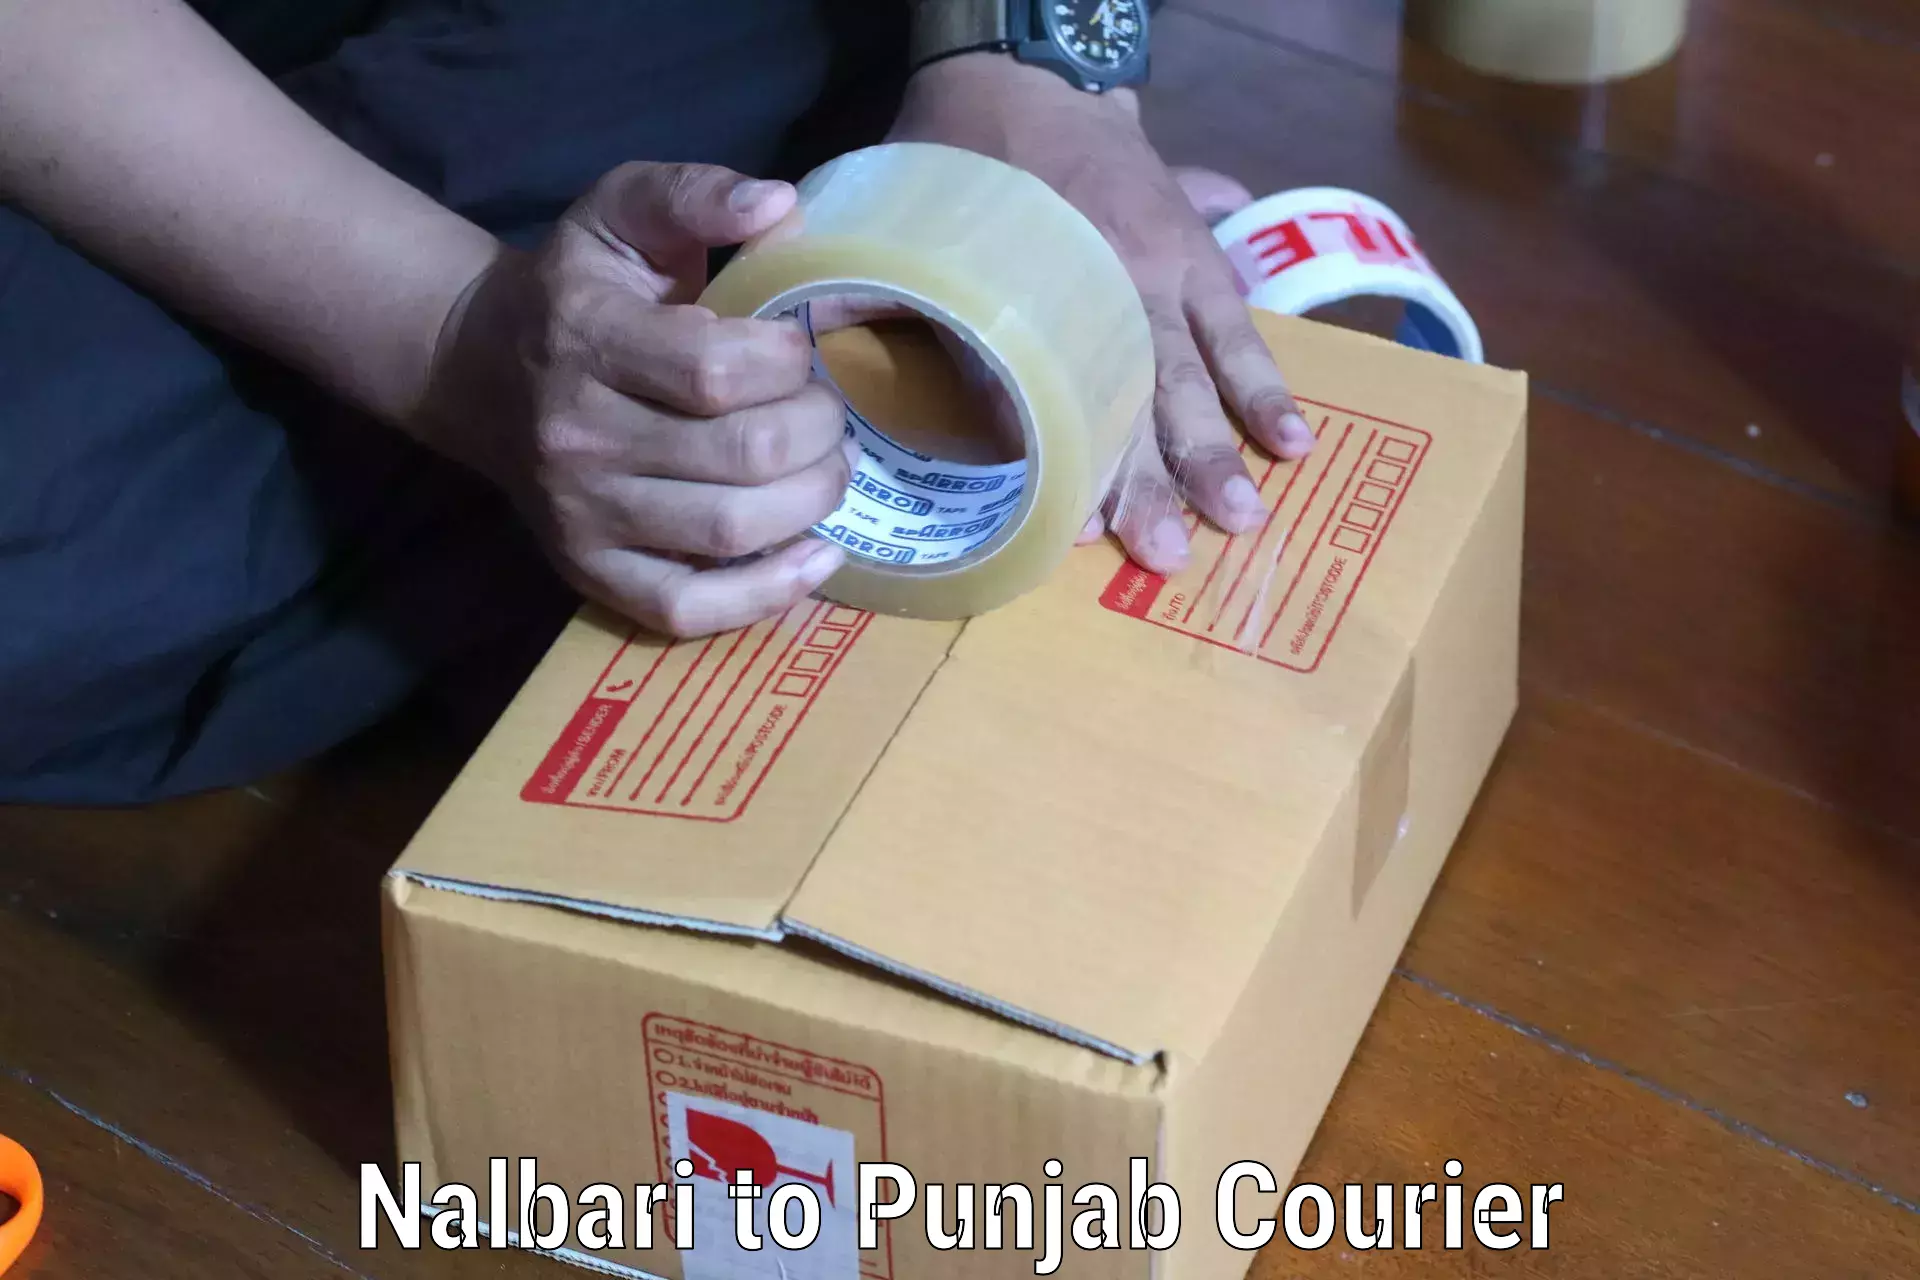 Professional courier handling Nalbari to Rampura Phul